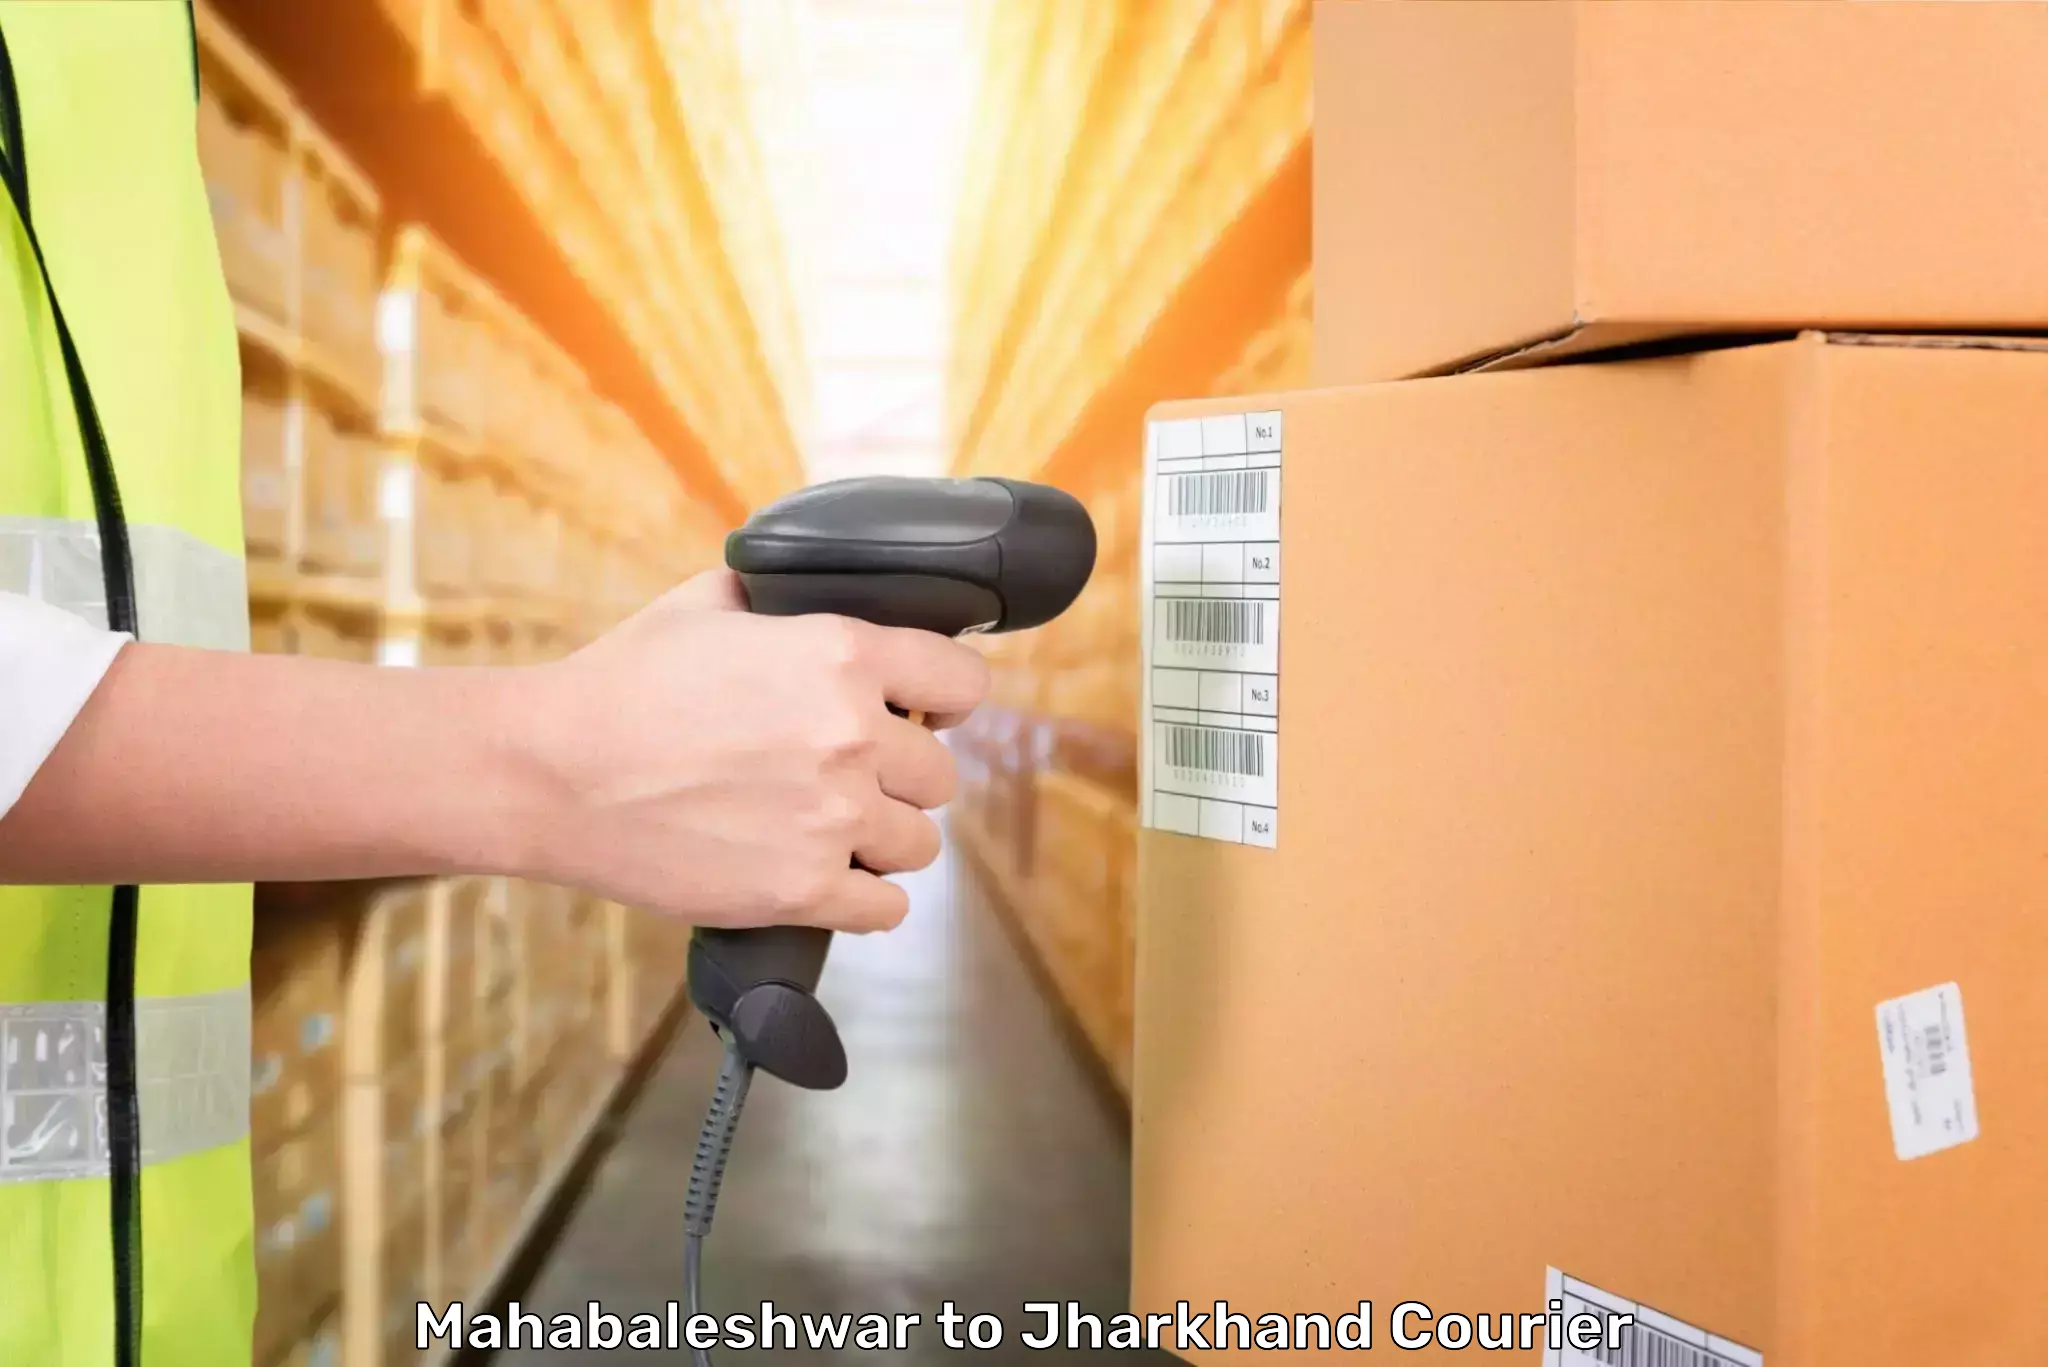 High-quality baggage shipment Mahabaleshwar to Jamshedpur